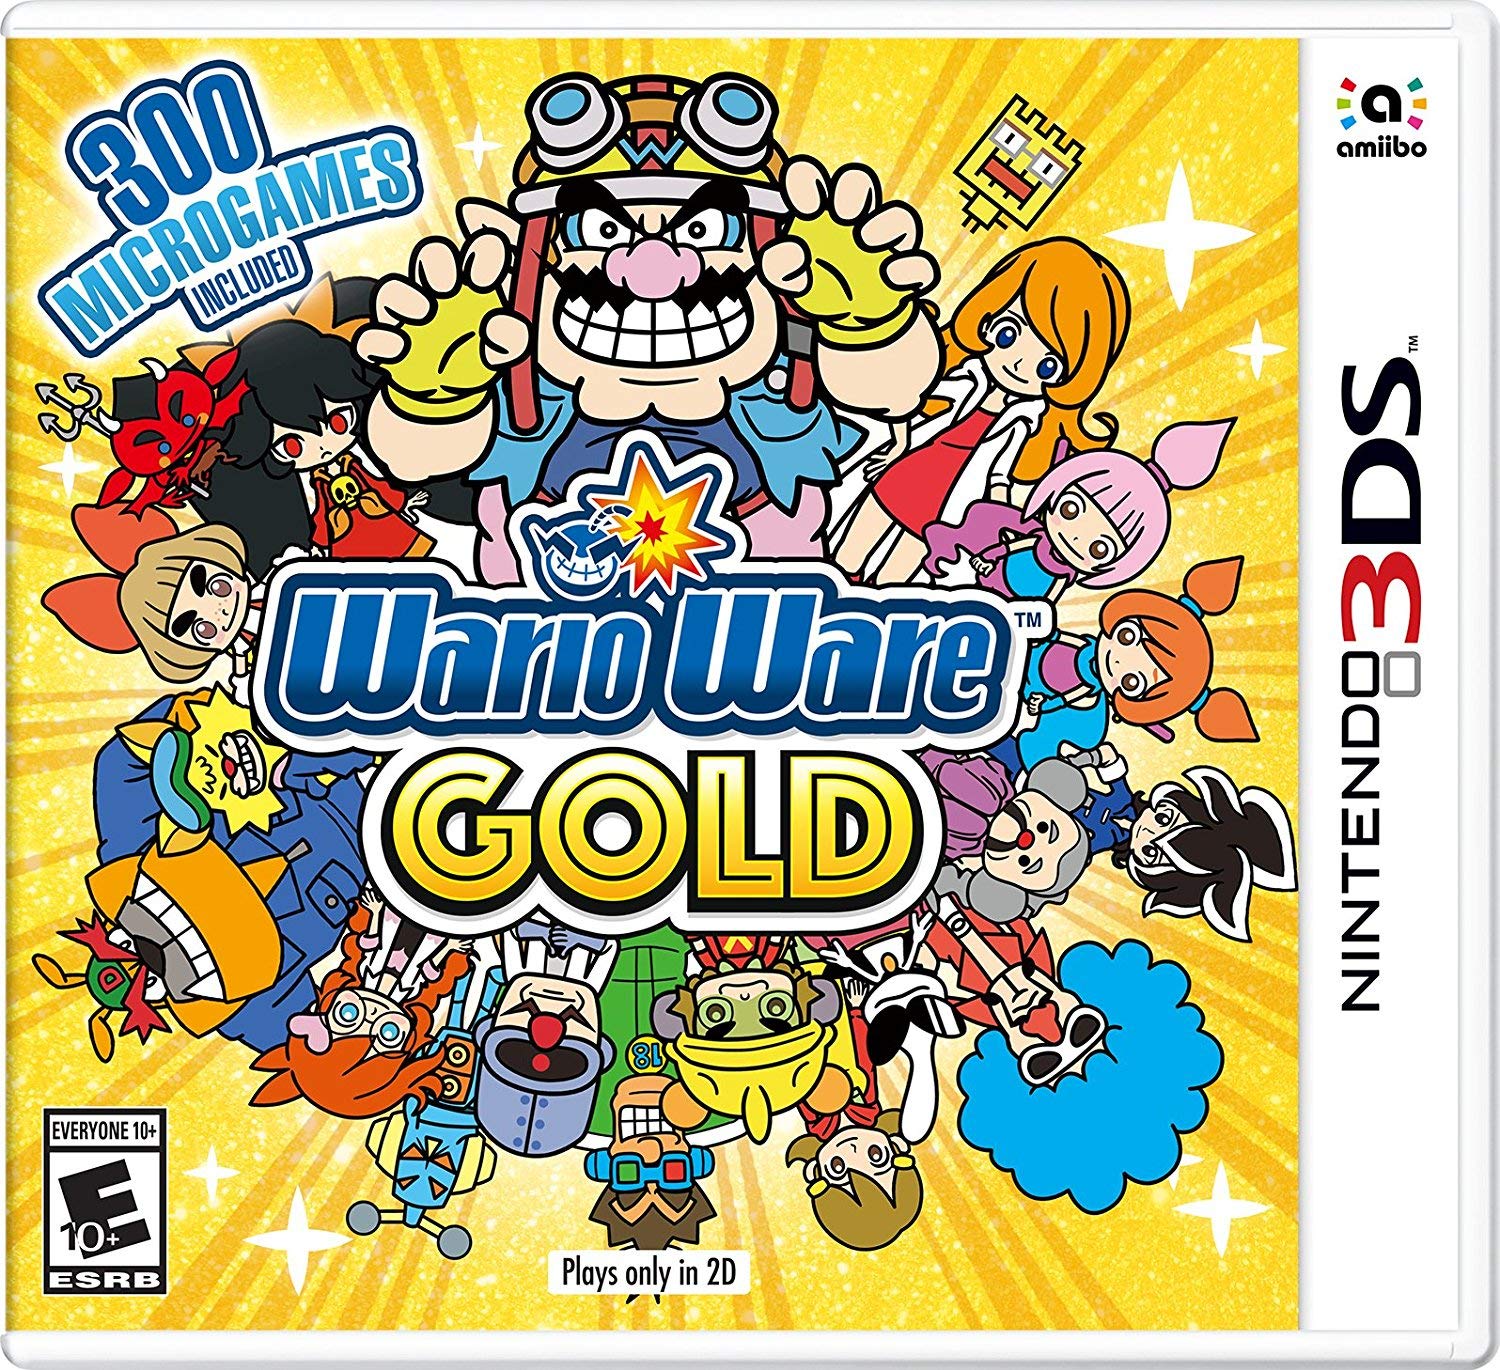 Warioware Gold - Nintendo 3DS